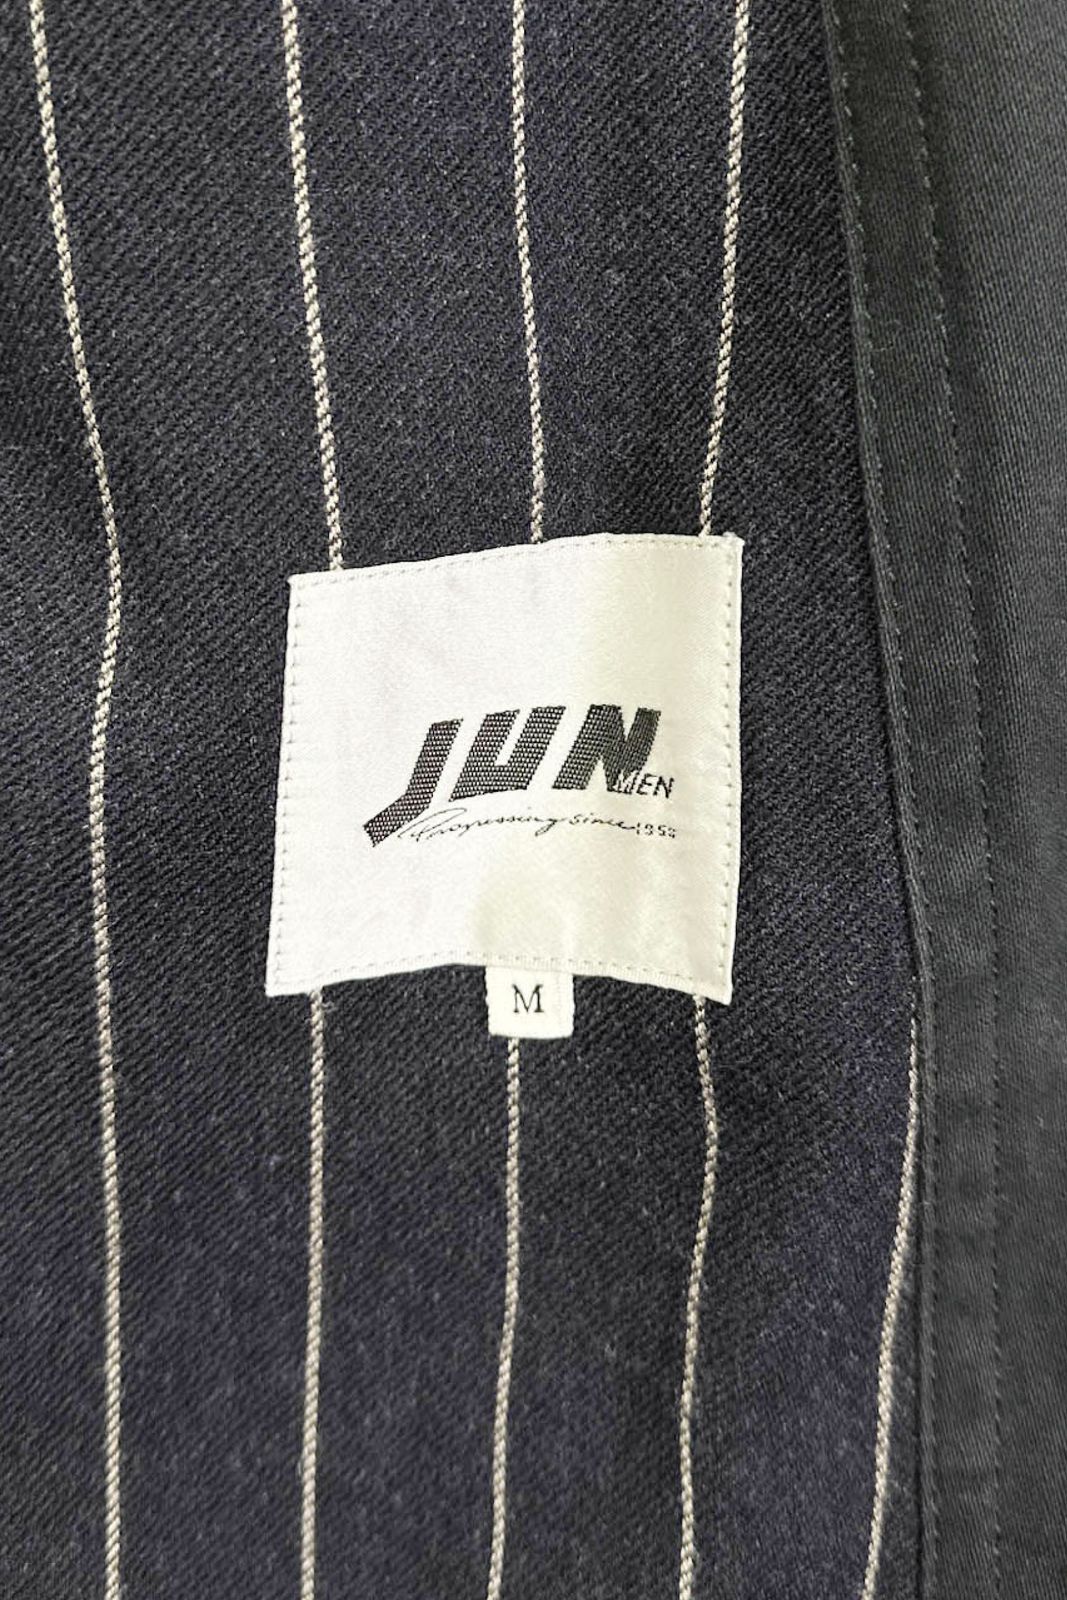 90‘s JUN MEN cotton jacket ジュンメン コットンジャケット ブラック サイズM 中綿 ウール裏地 ヴィンテージ 8